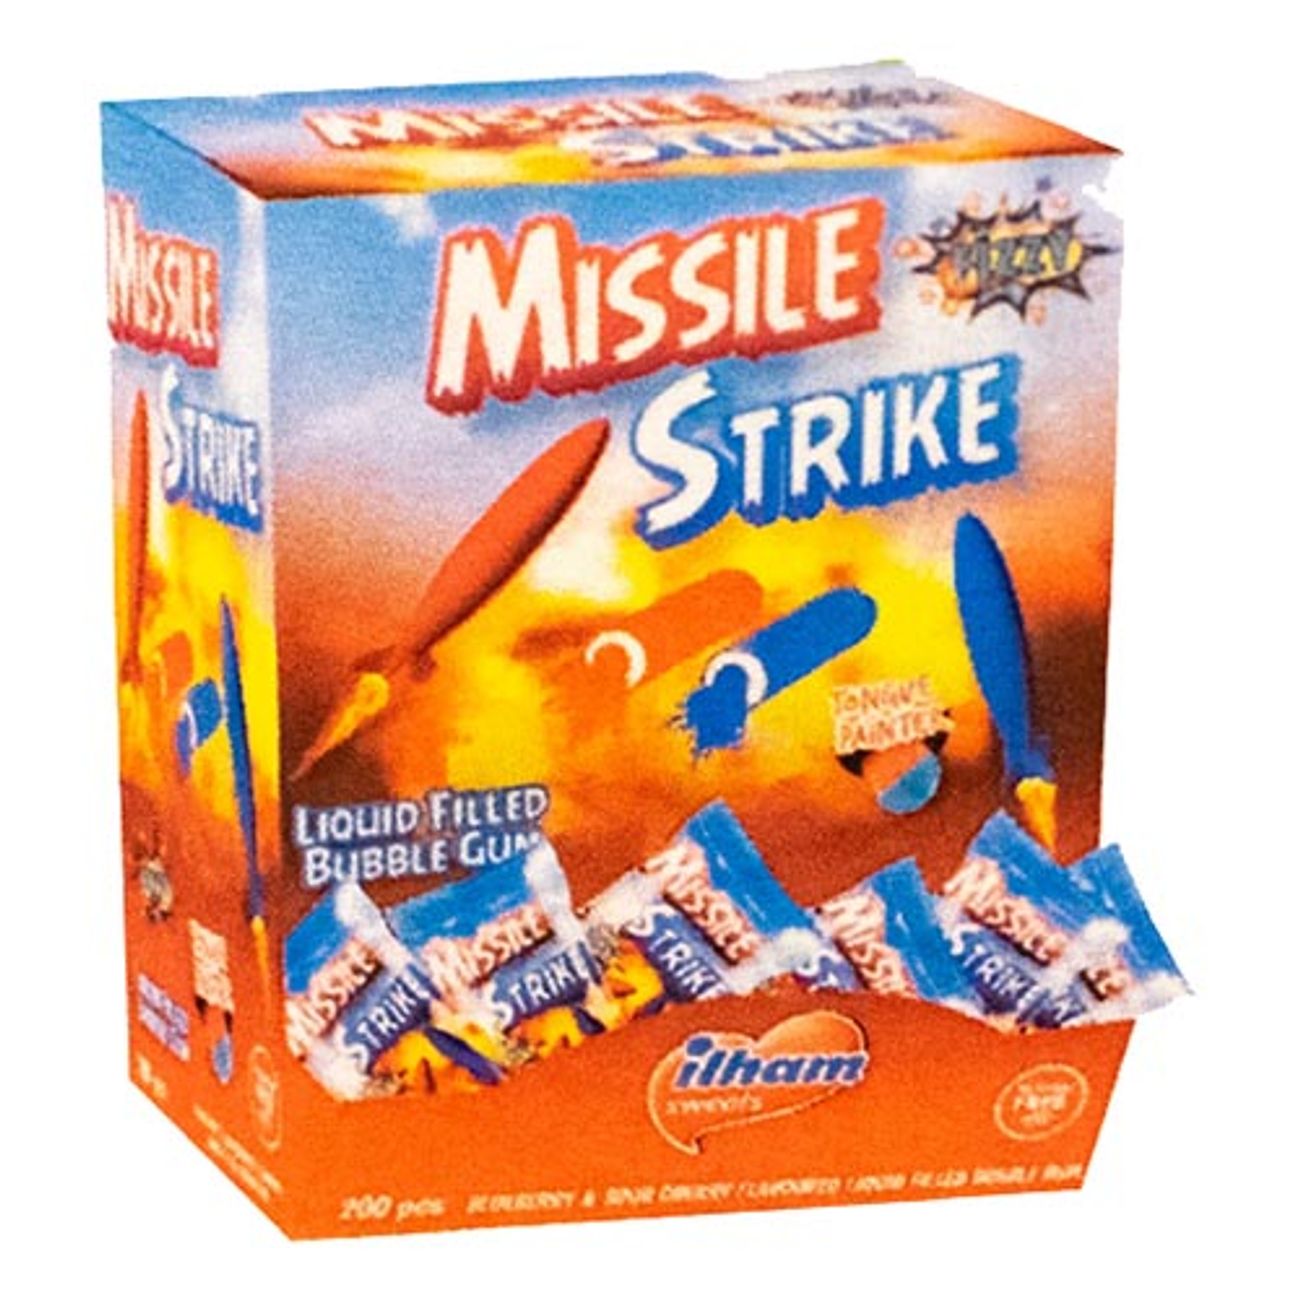 missile-strike-bubble-gum-1